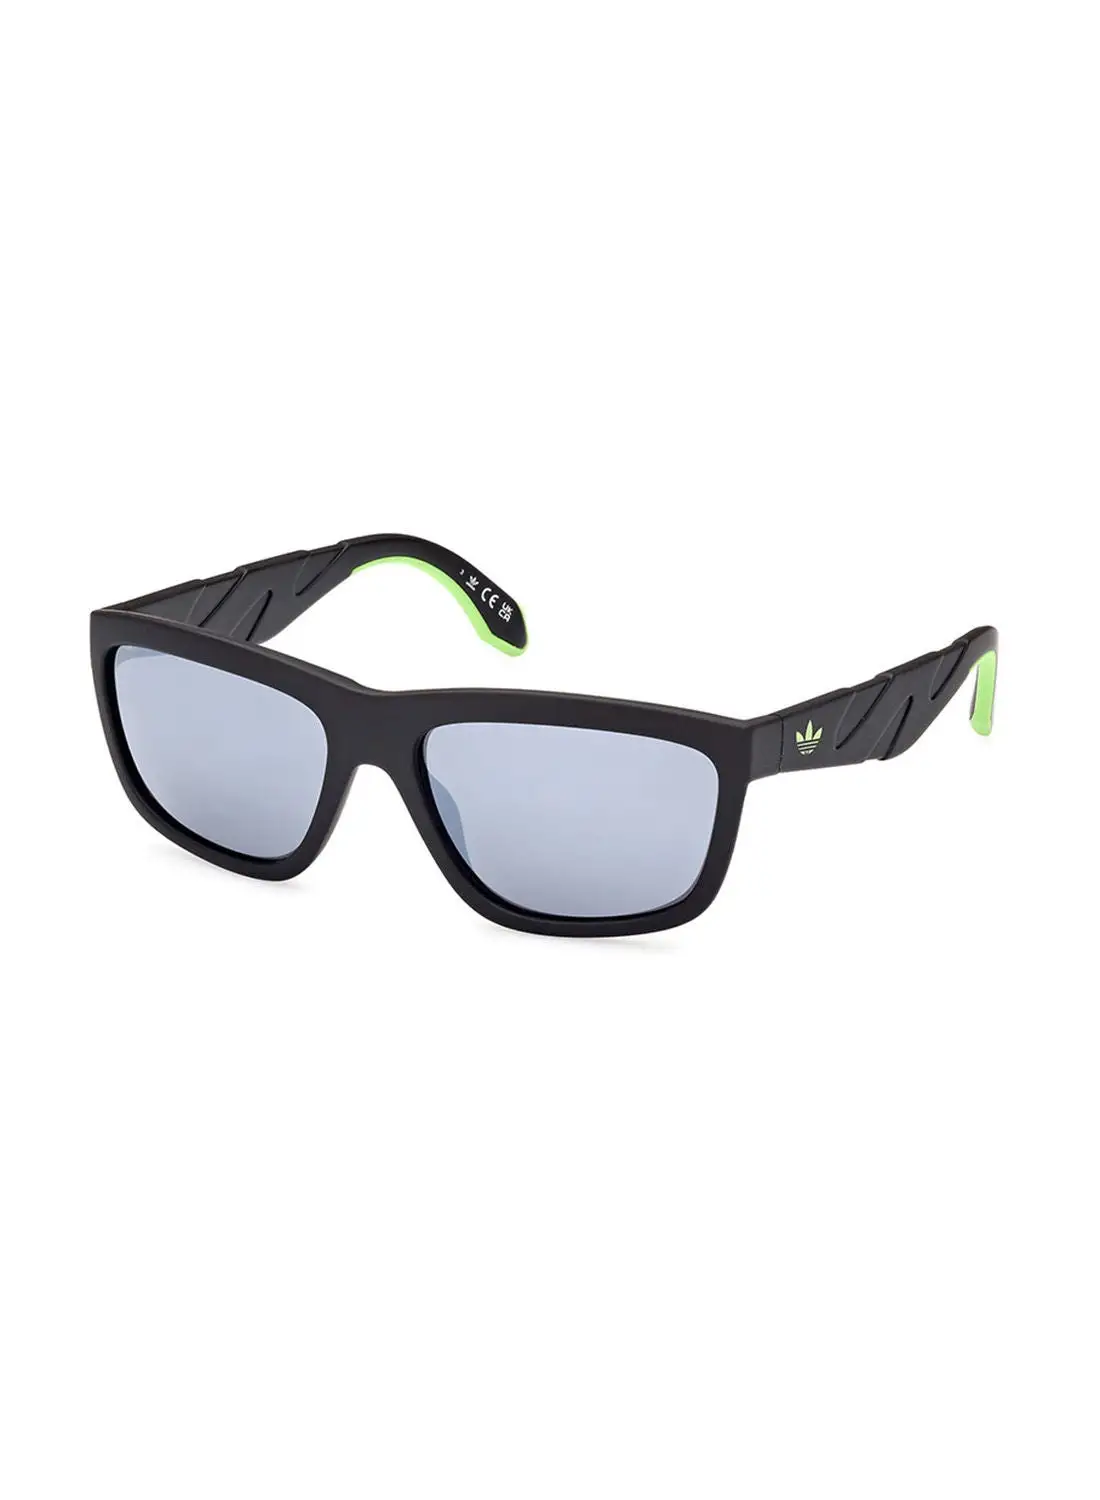 Adidas Sunglasses For Unisex OR009402C58